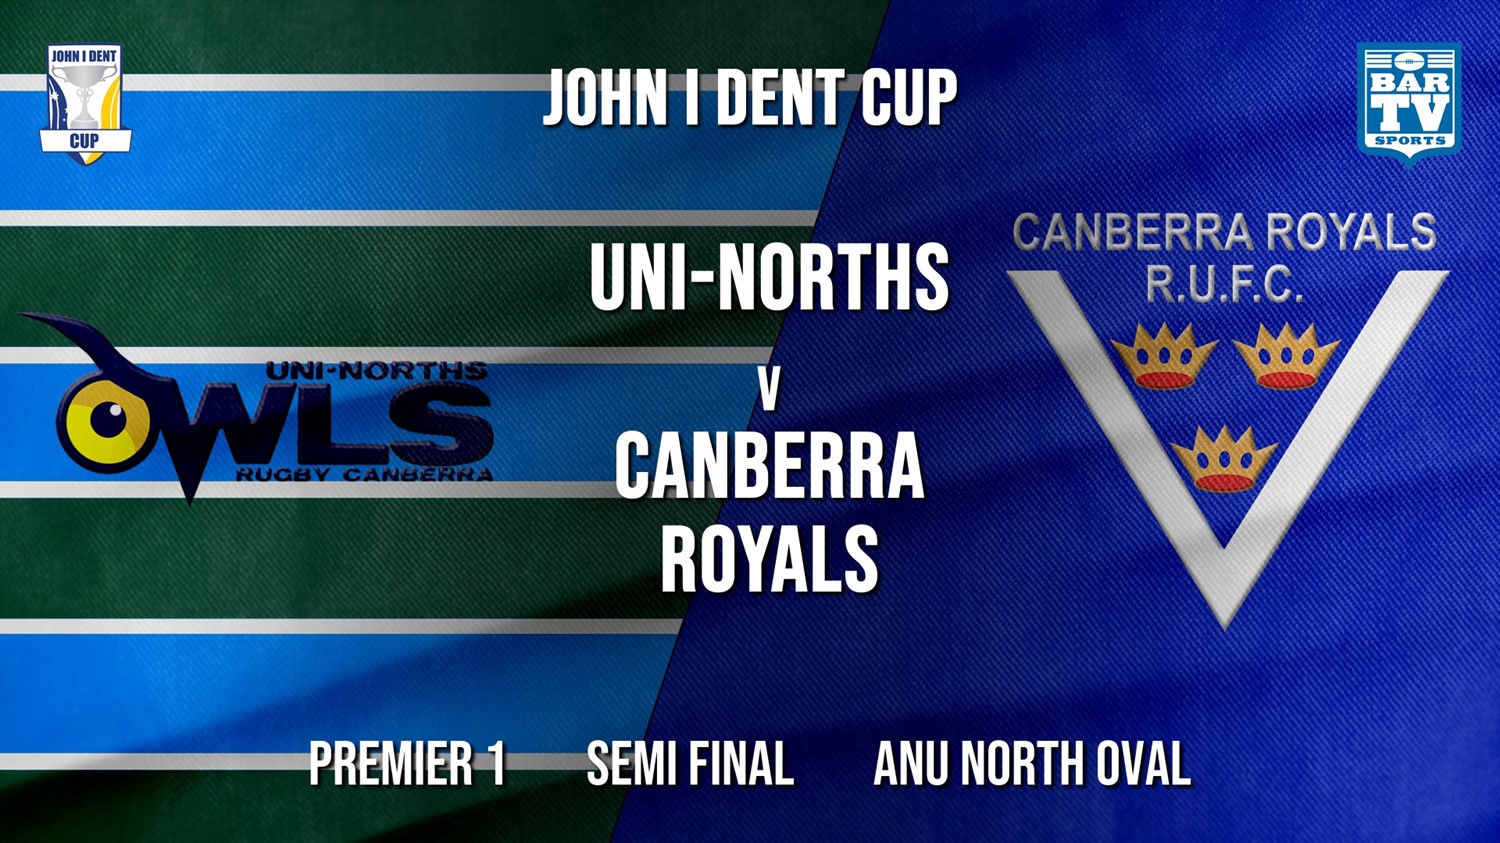 John I Dent Semi Final - Premier 1 - UNI-Norths v Canberra Royals Minigame Slate Image